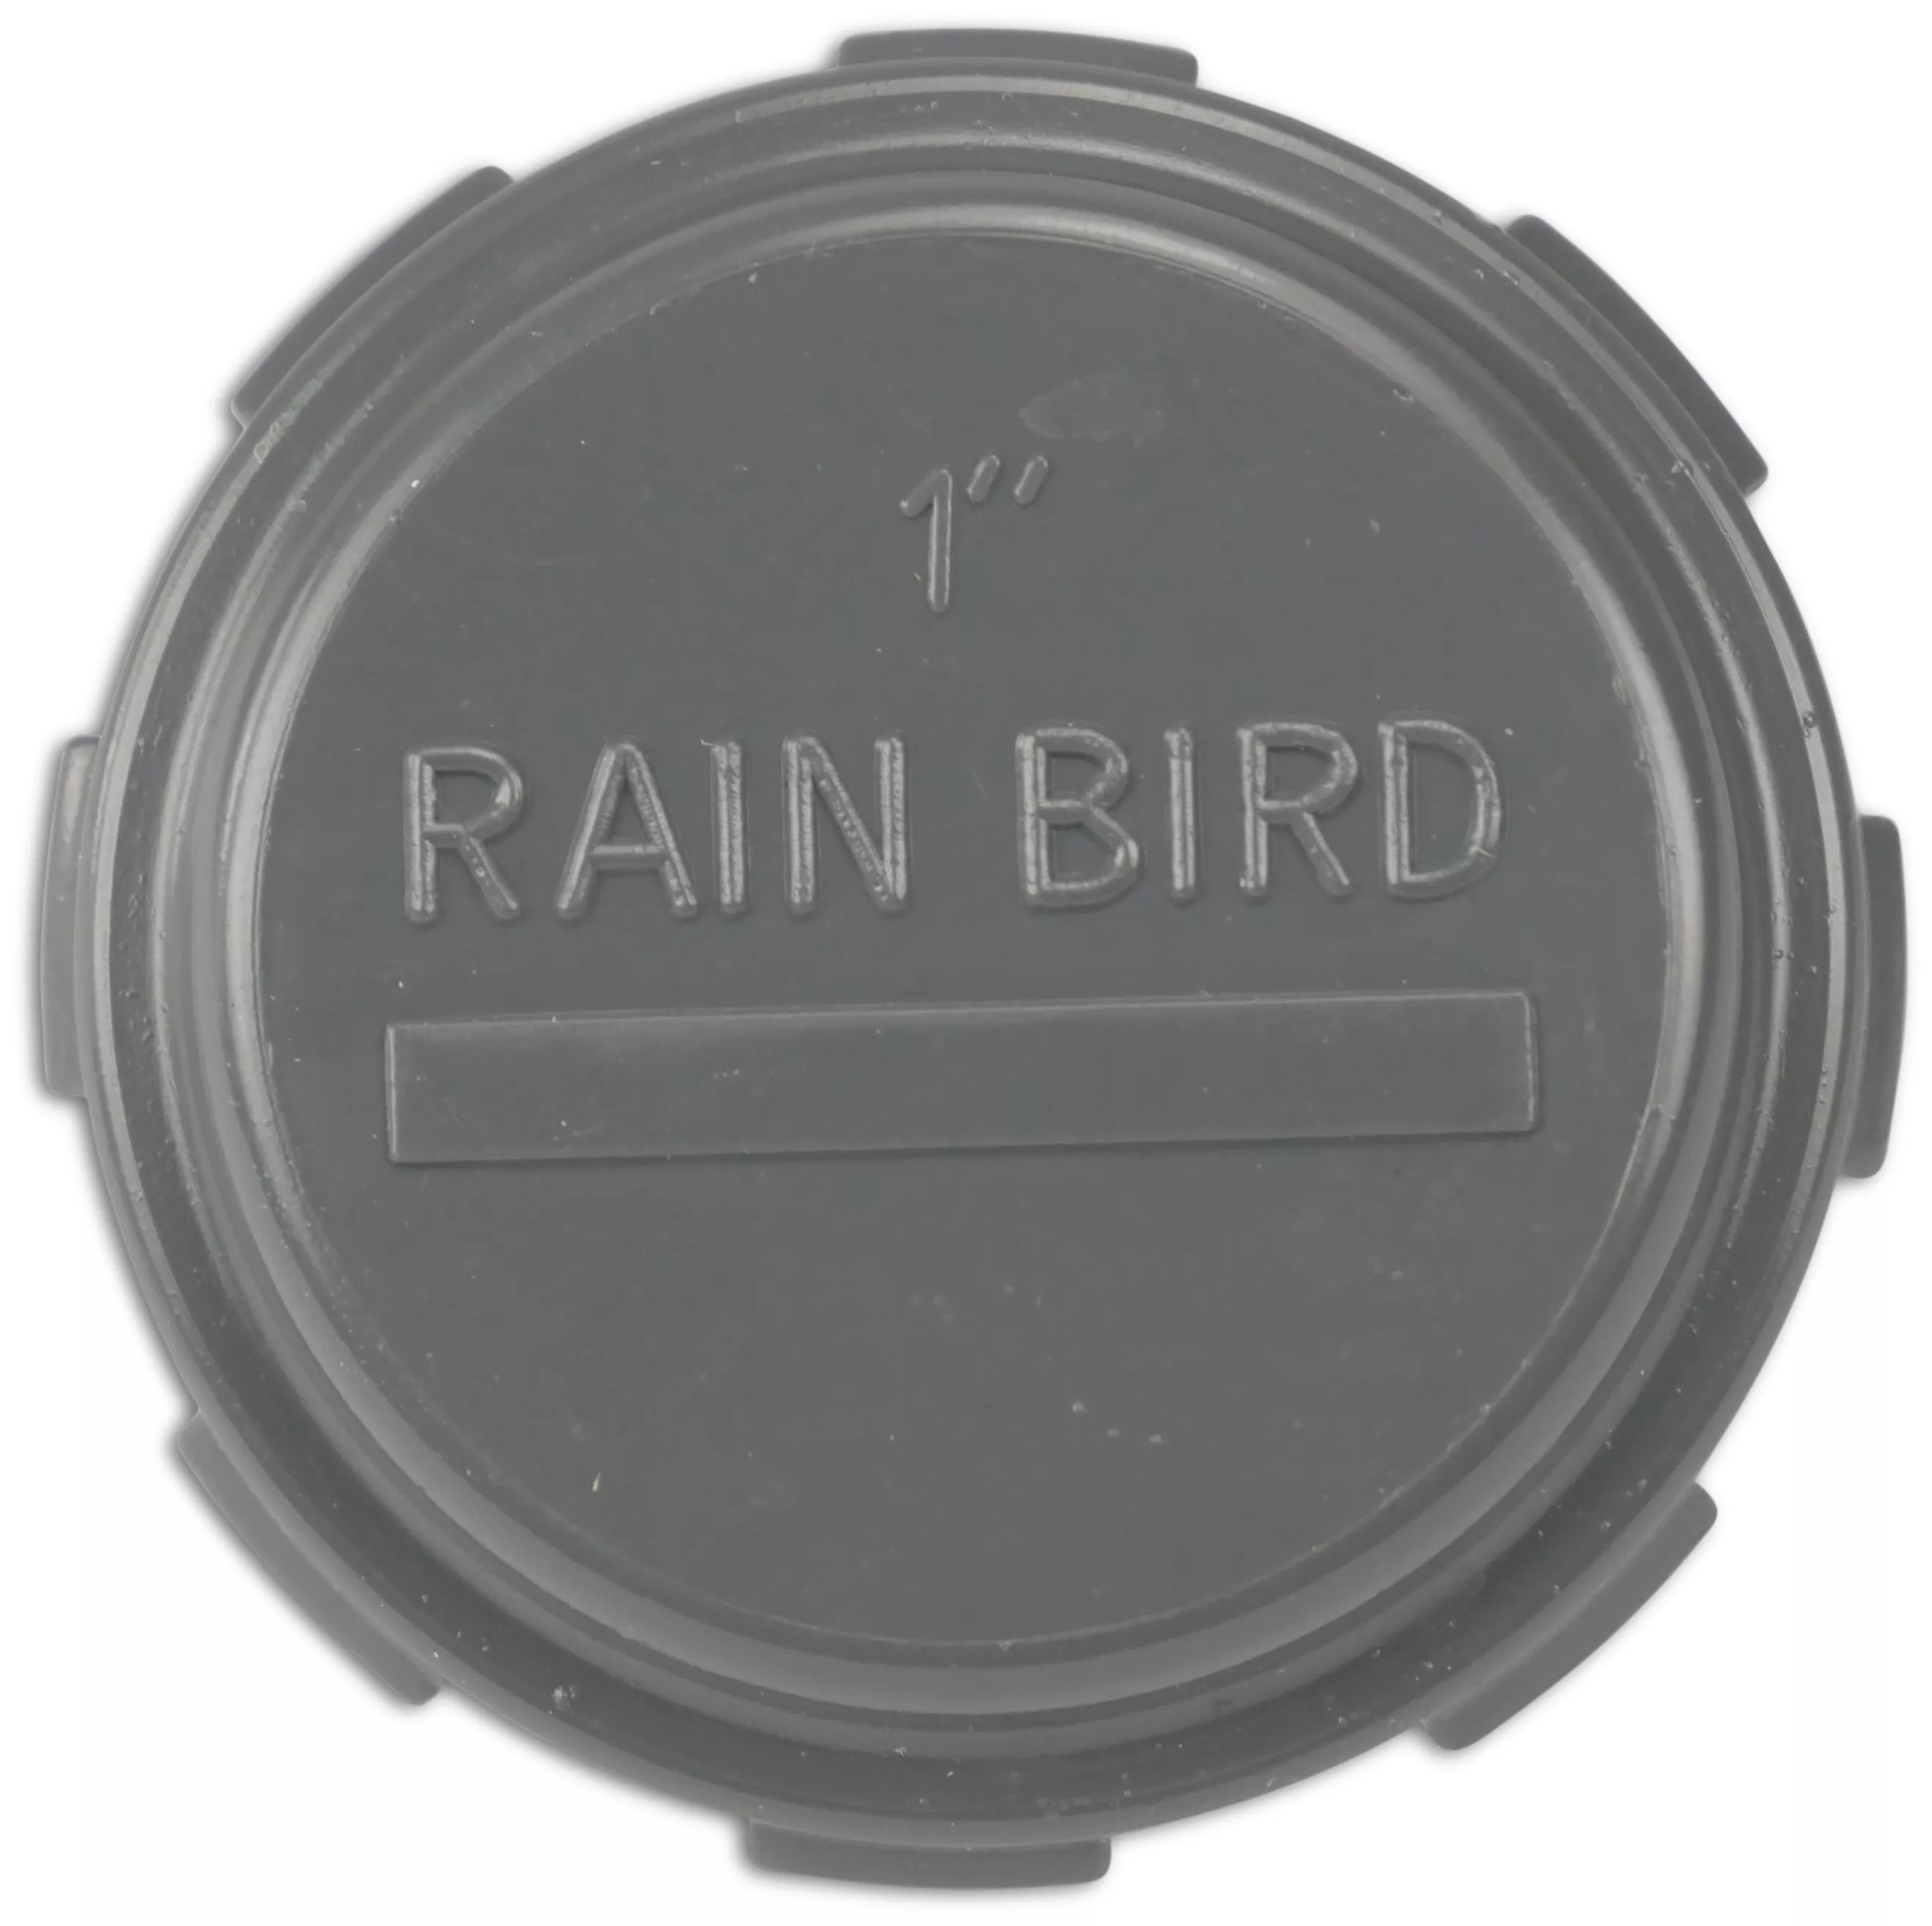 RAIN BIRD EINDKAP PVC BINNENDRAAD 10BAR GRIJS